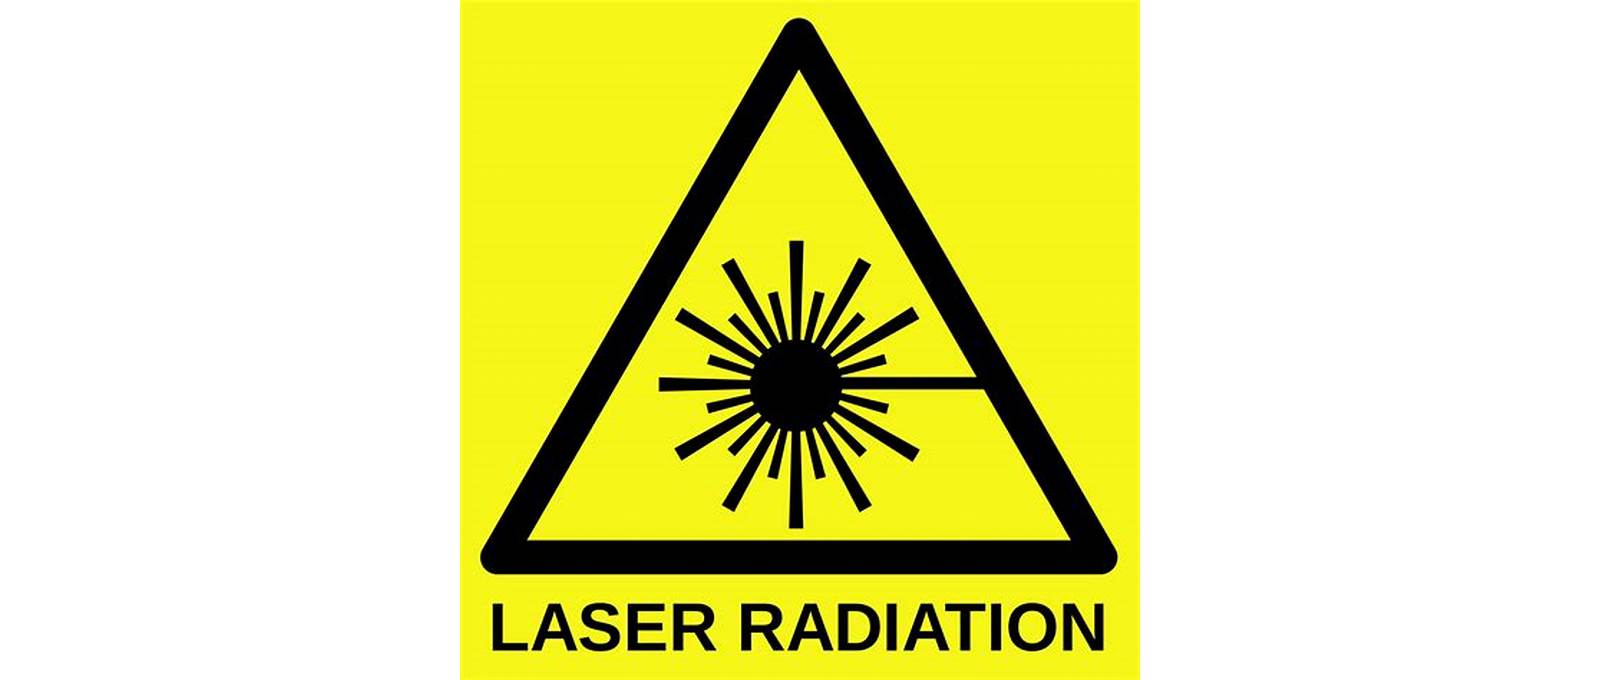 Laser safety regulations